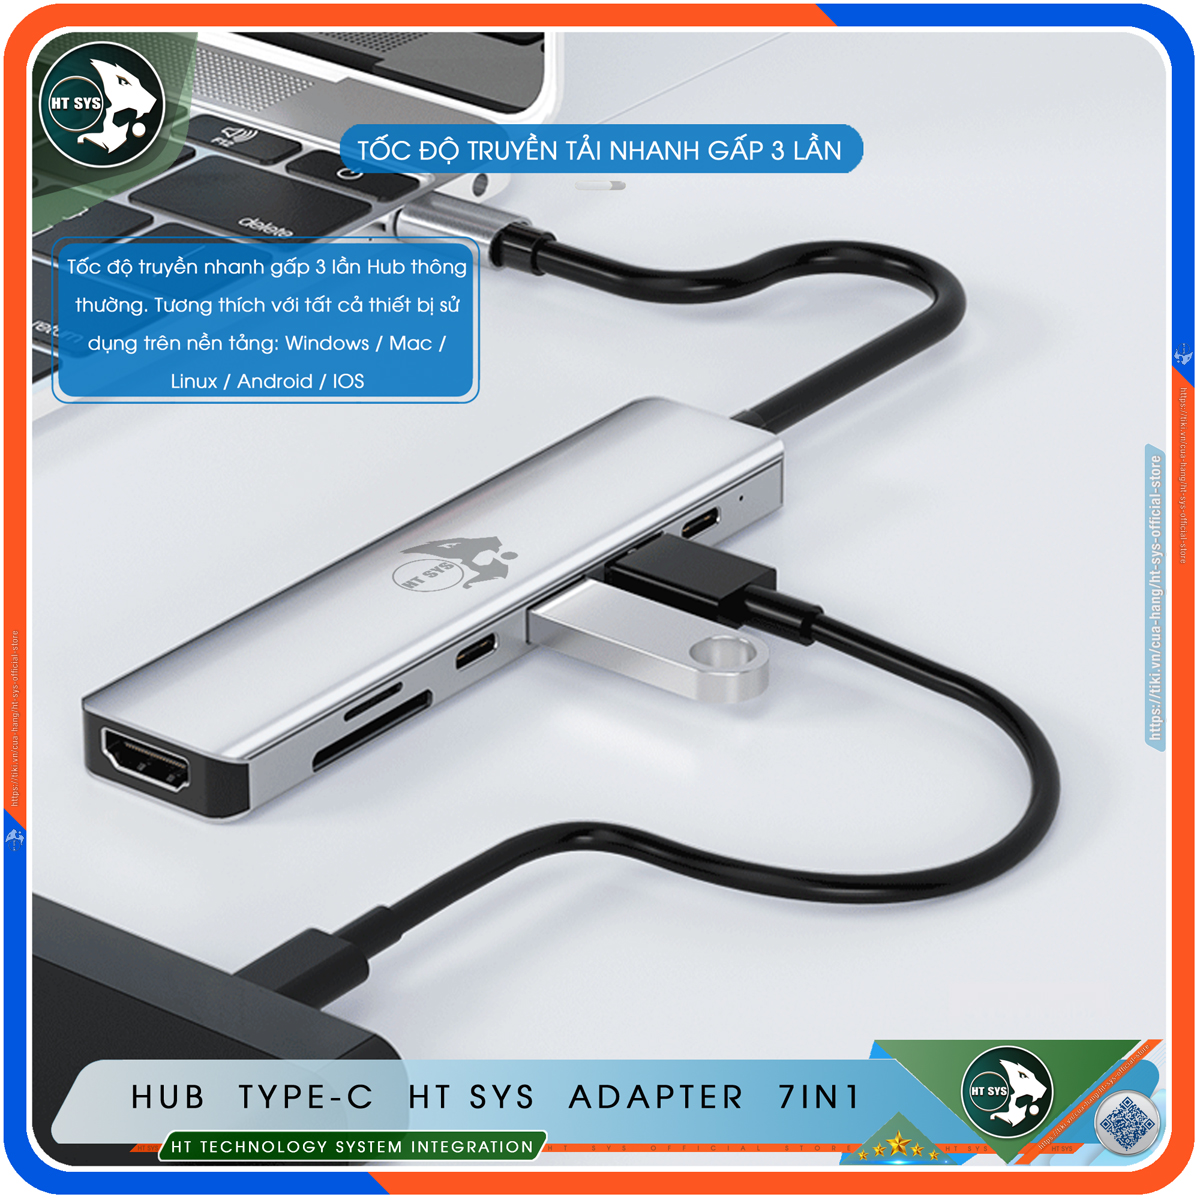 Hub Chuyển Đổi USB Type C HT SYS 7 in 1 To HDMI, USB 3.0, SD, TF, USB-C, PD 100W - Hàng Chính Hãng